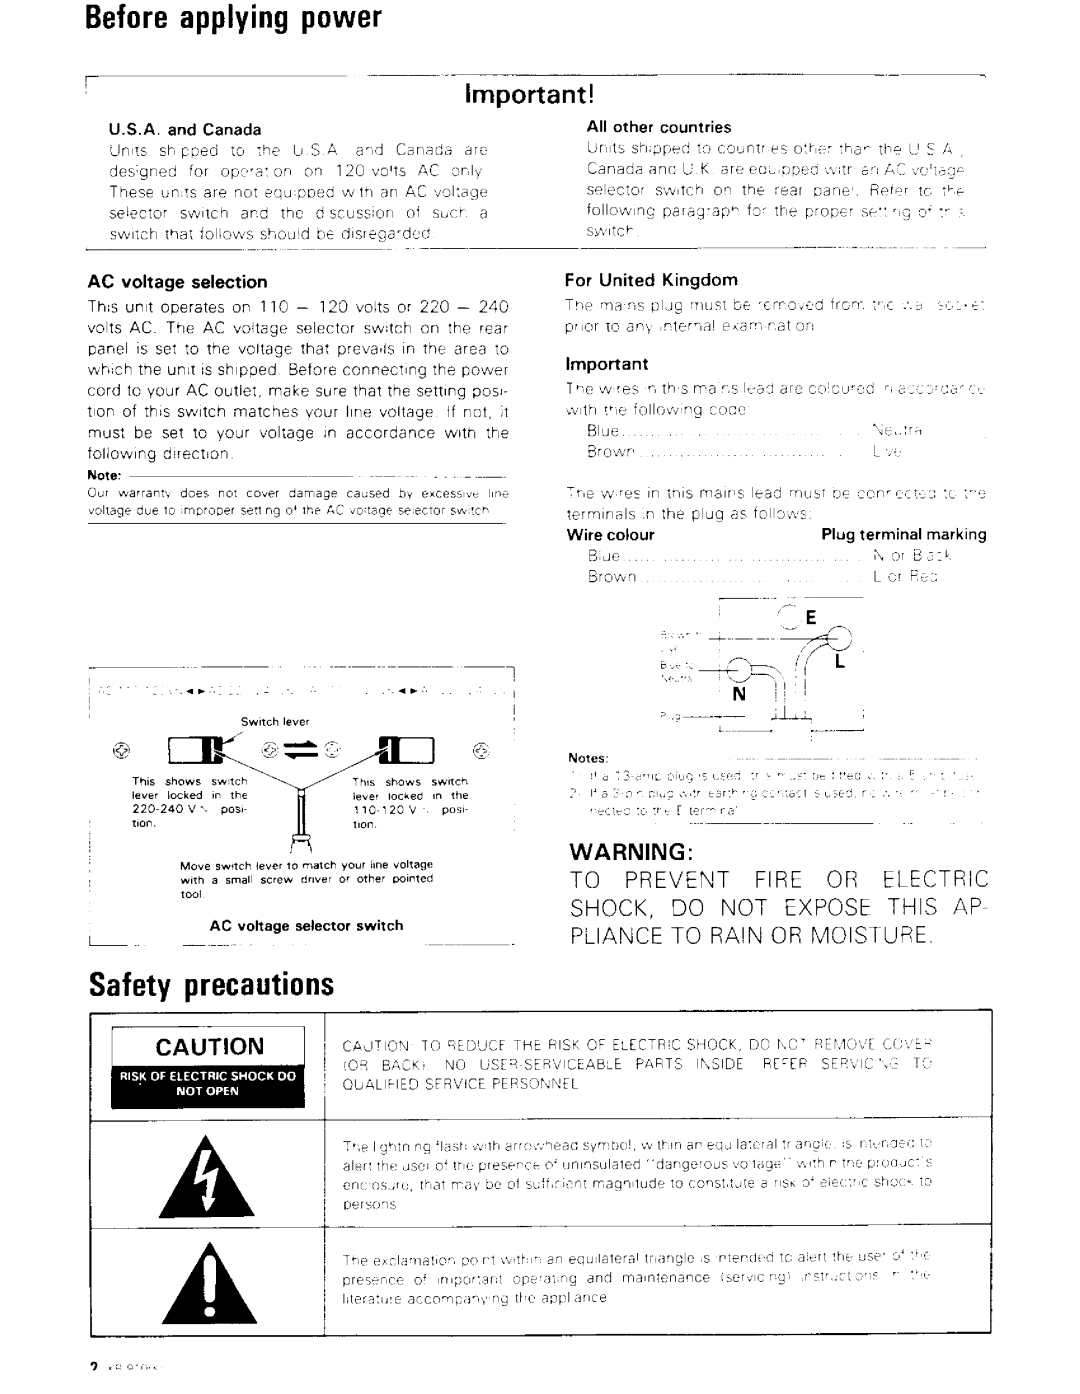 Kenwood KR-910 manual 